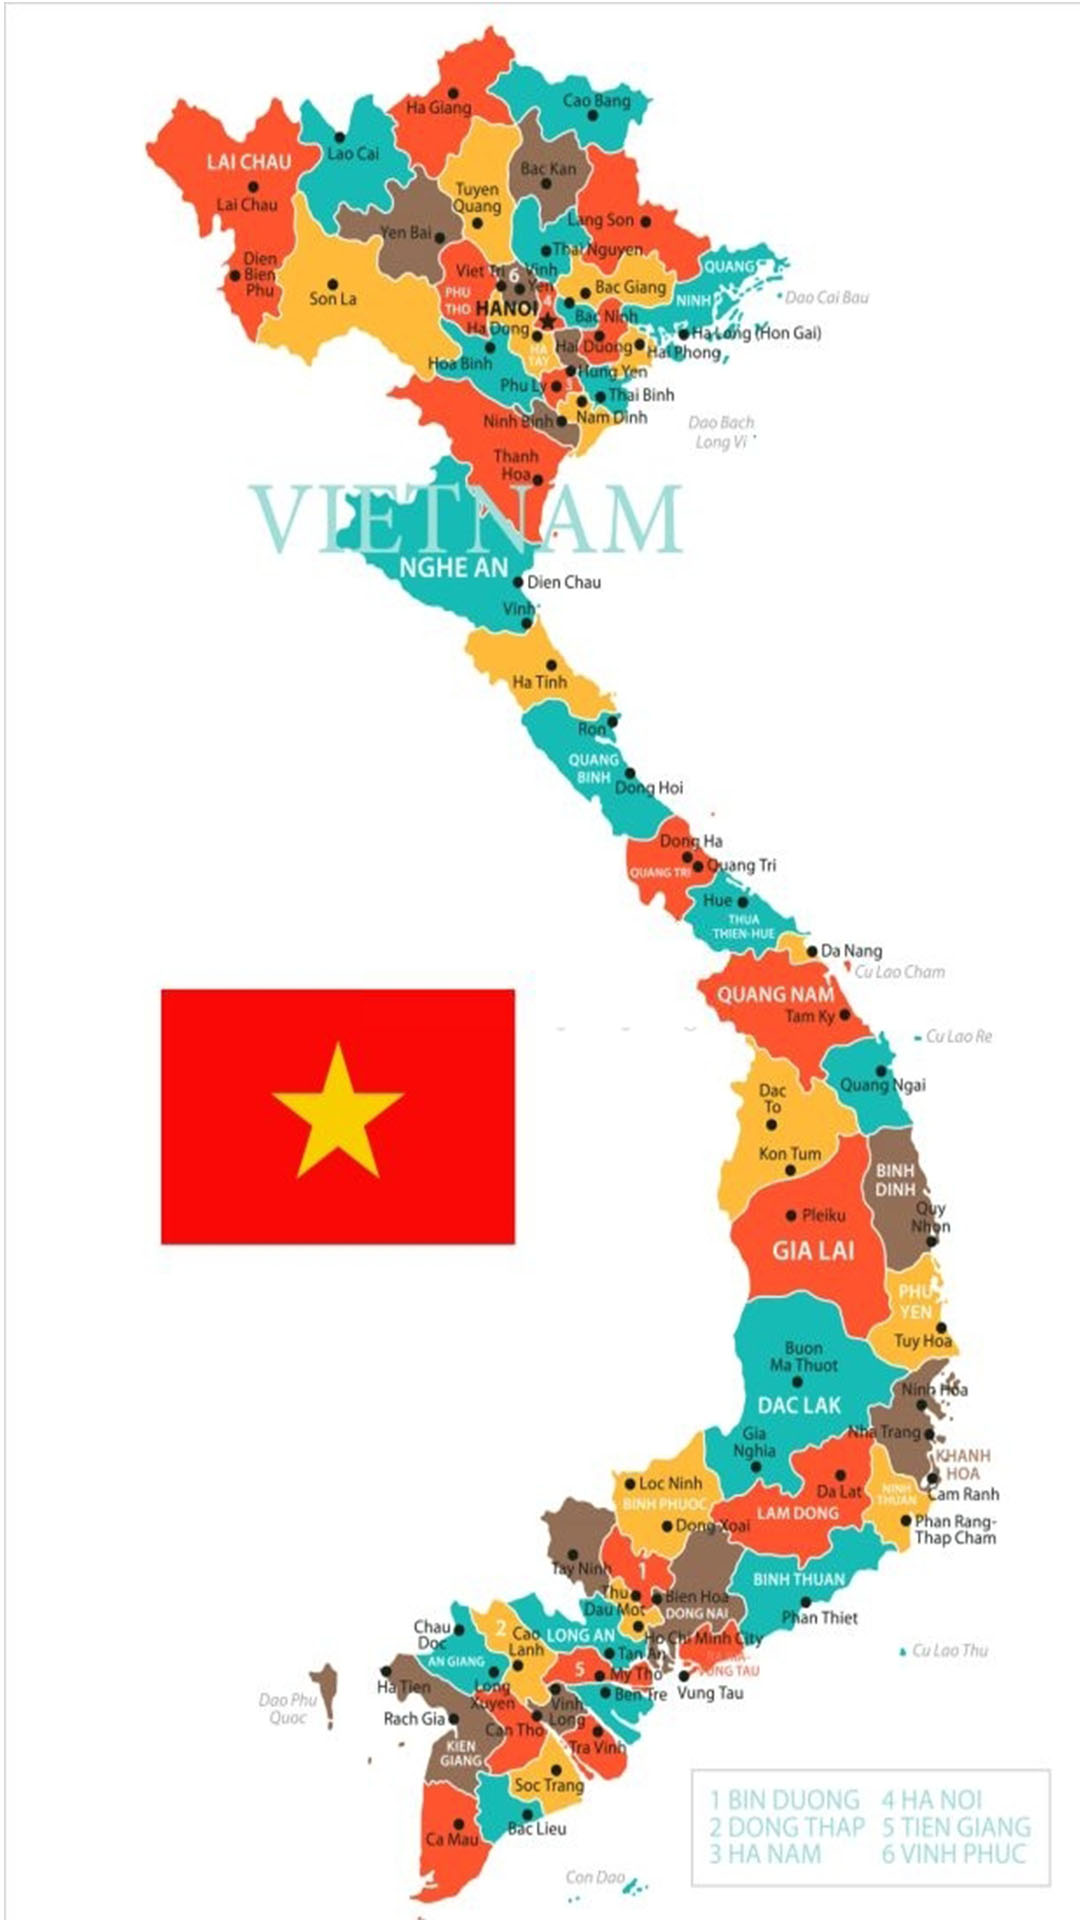 Hình nền cờ Việt Nam sẽ là sự lựa chọn hoàn hảo cho những ai yêu thích sự đơn giản và trang nhã. Trên những nền trắng đơn giản, lá cờ đỏ nổi bật, tạo nên một sự kết hợp lạ mắt nhưng cực kì ấn tượng.